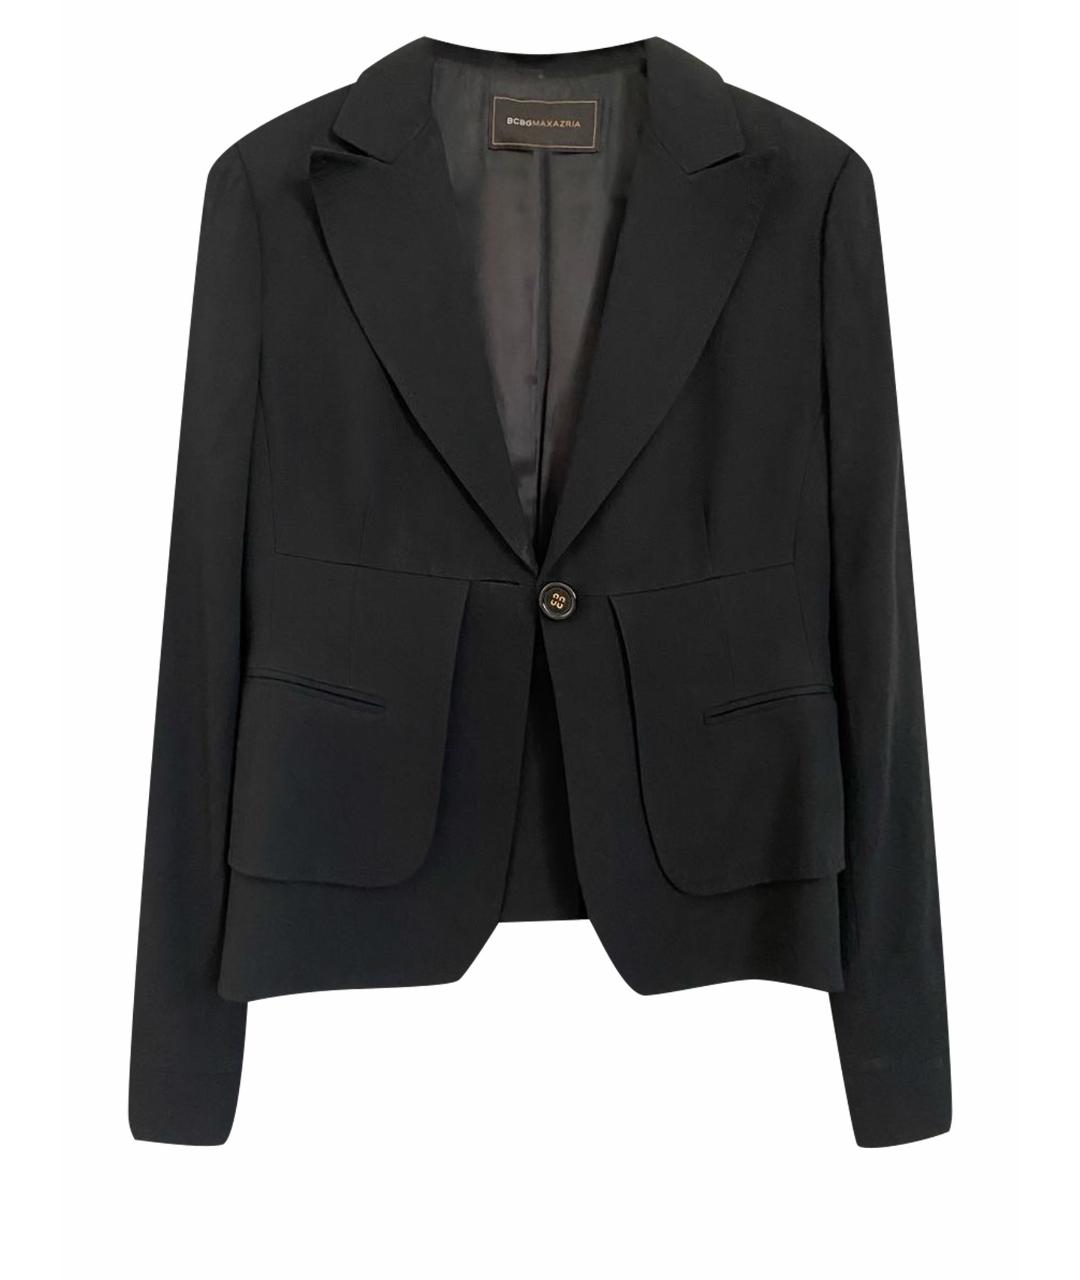 BCBG MAXAZRIA Черный вискозный жакет/пиджак, фото 1